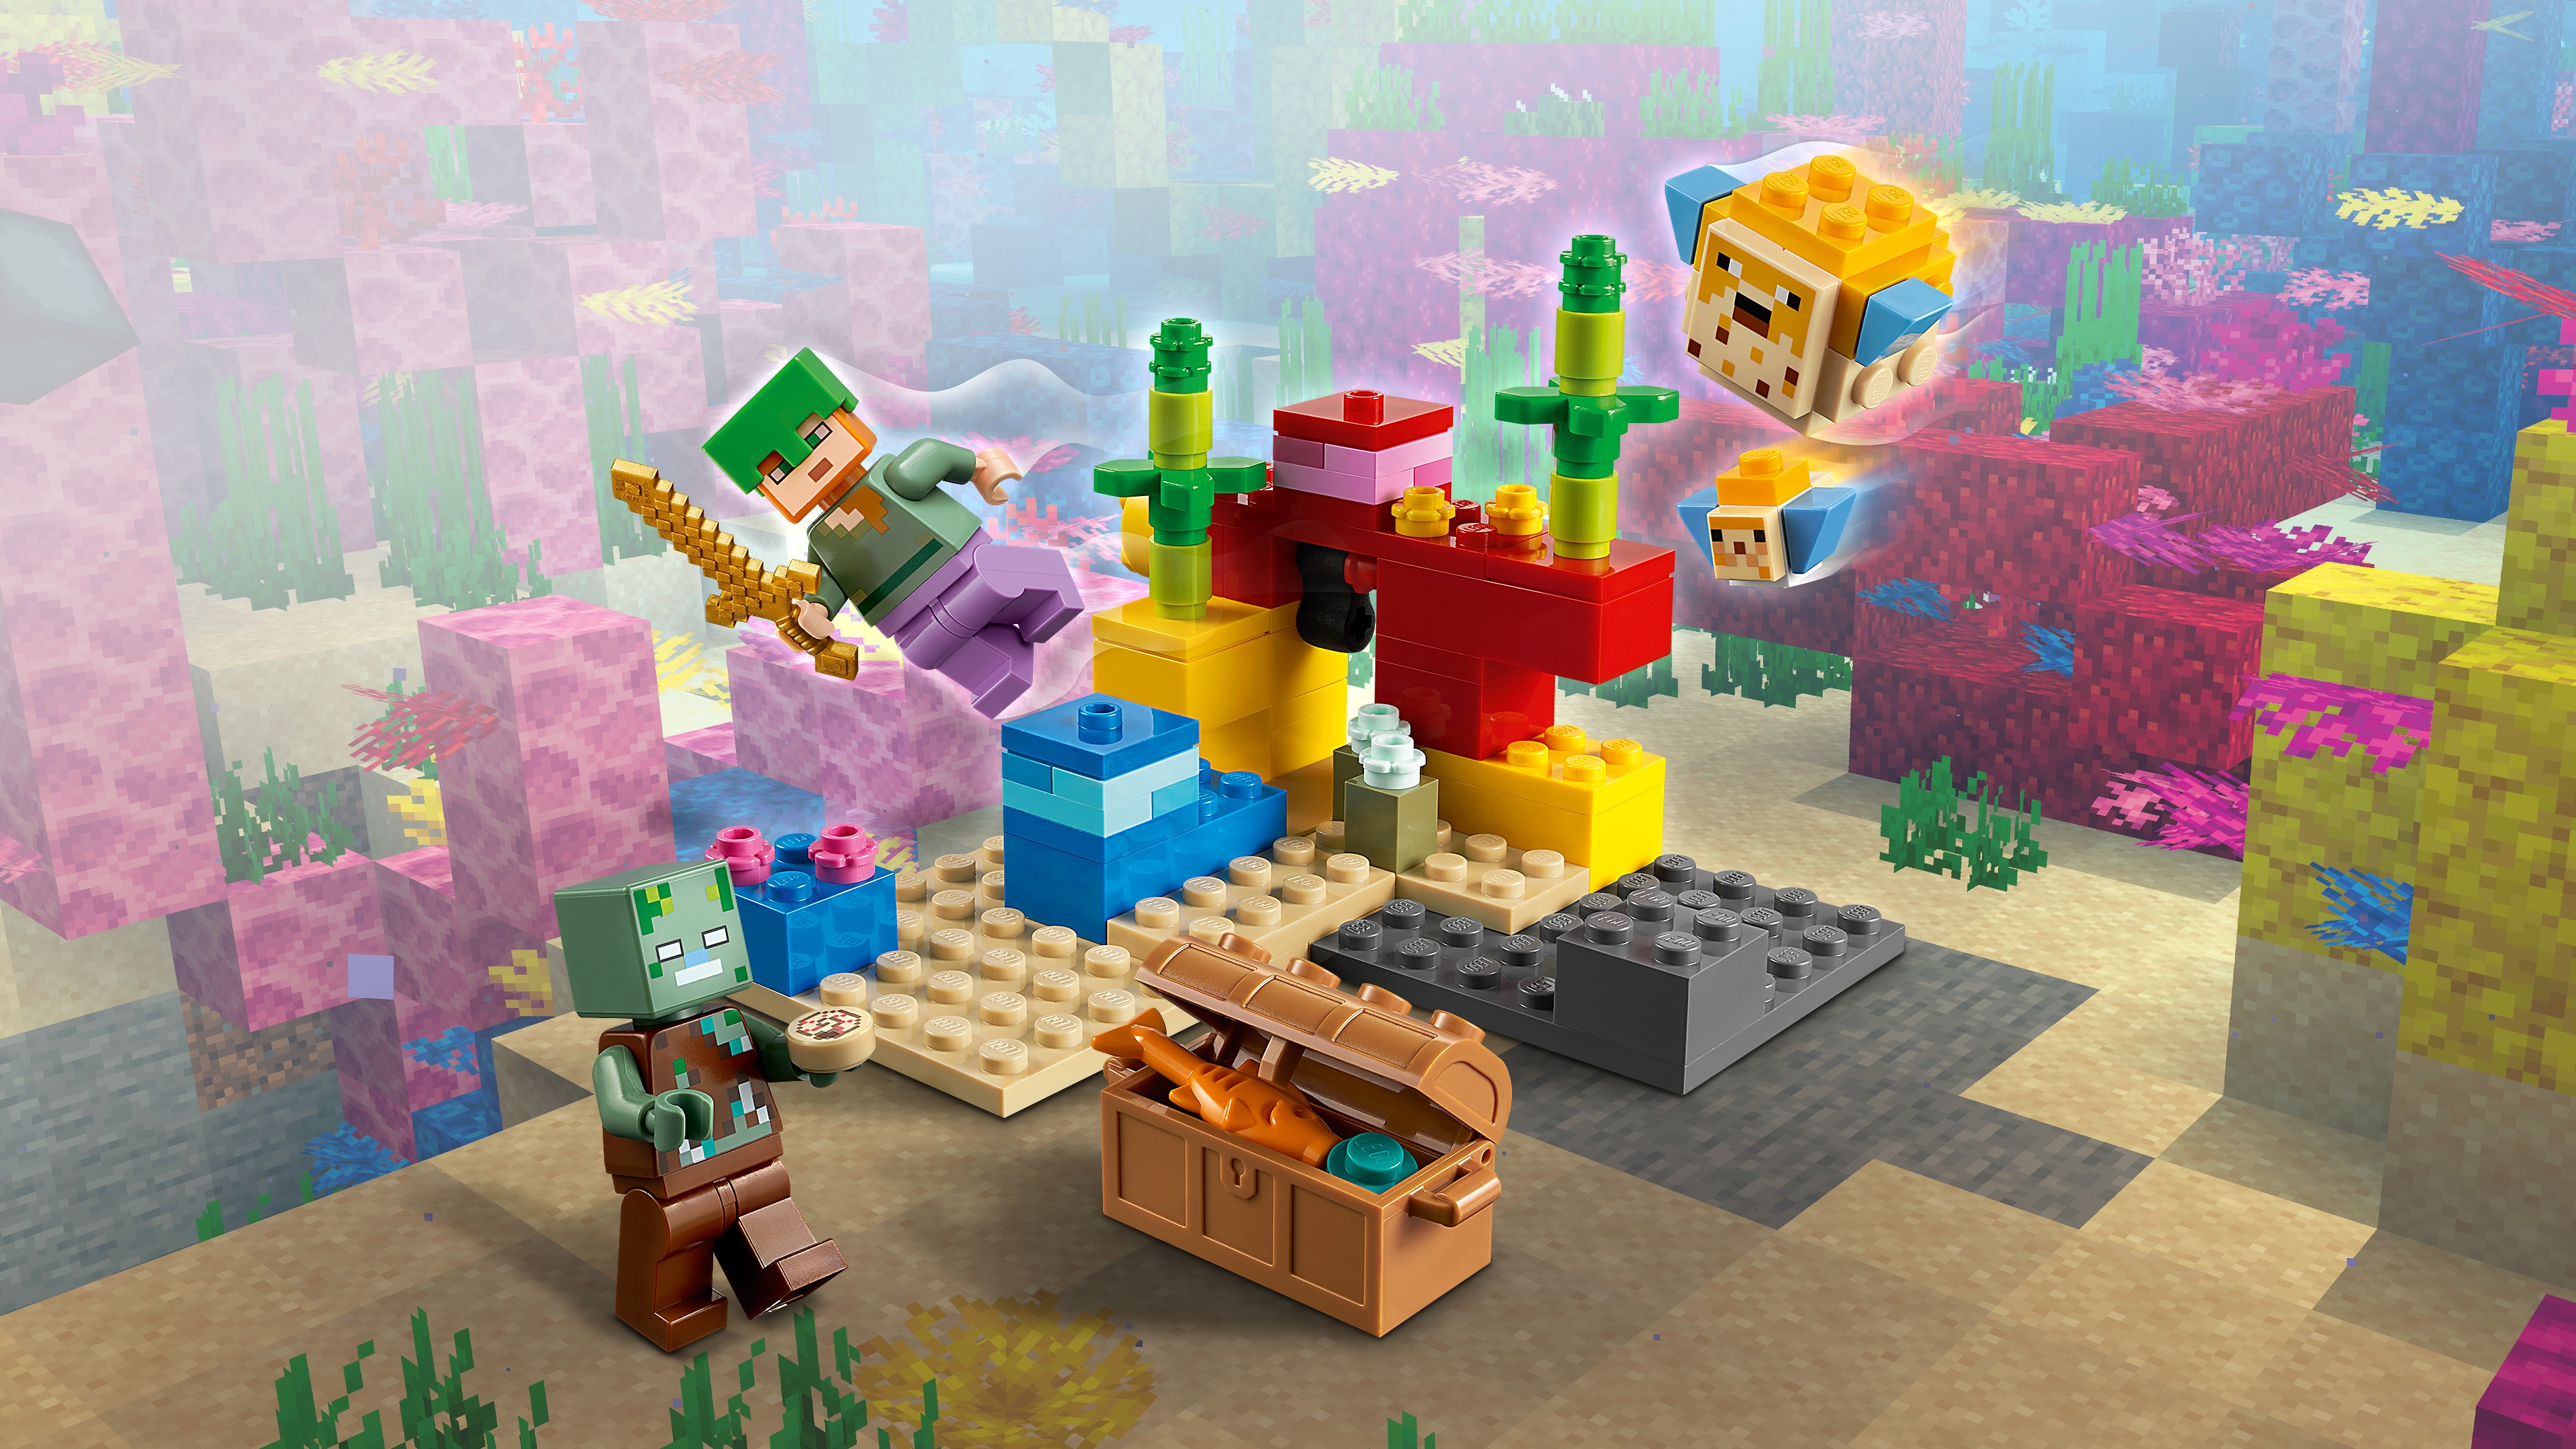 SKINS DO MINECRAFT DE LEGO - LEGO MINECRAFT TUTORIAL 